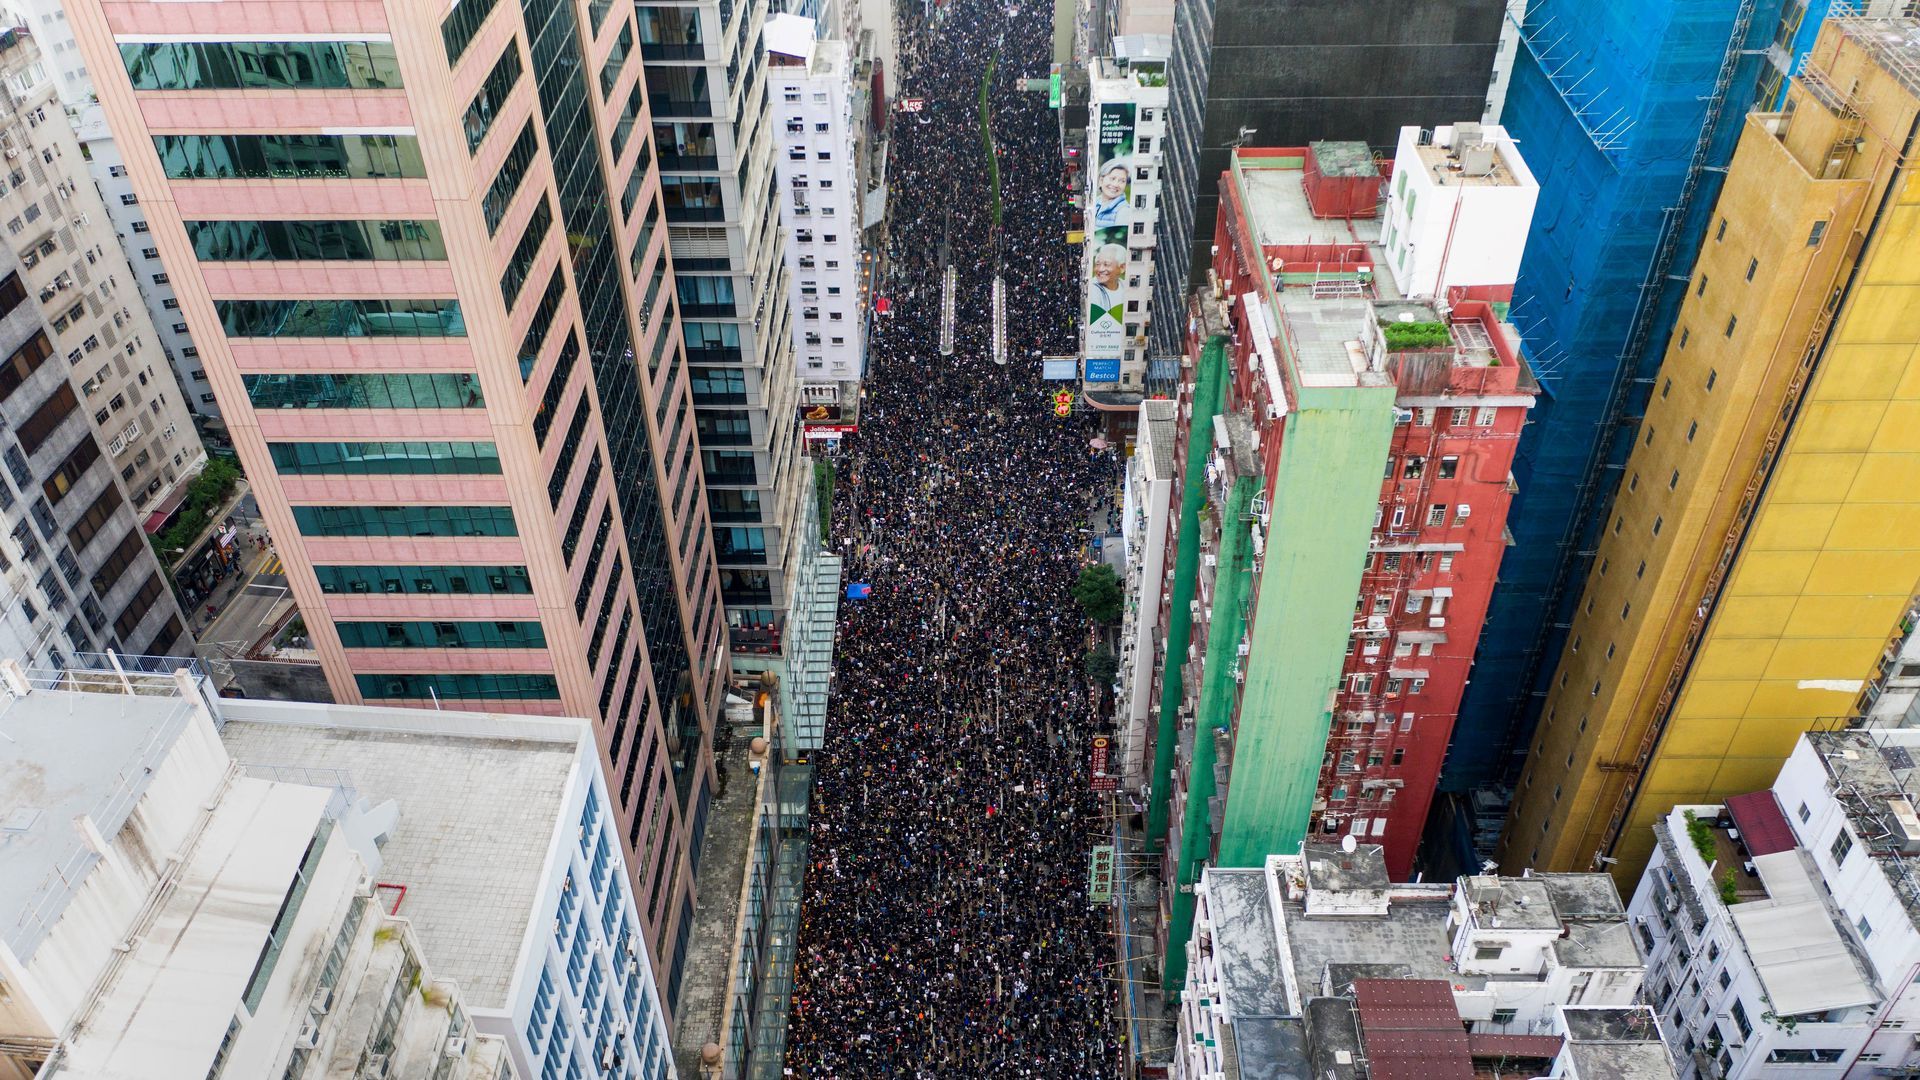 Mass protests in Hong Kong